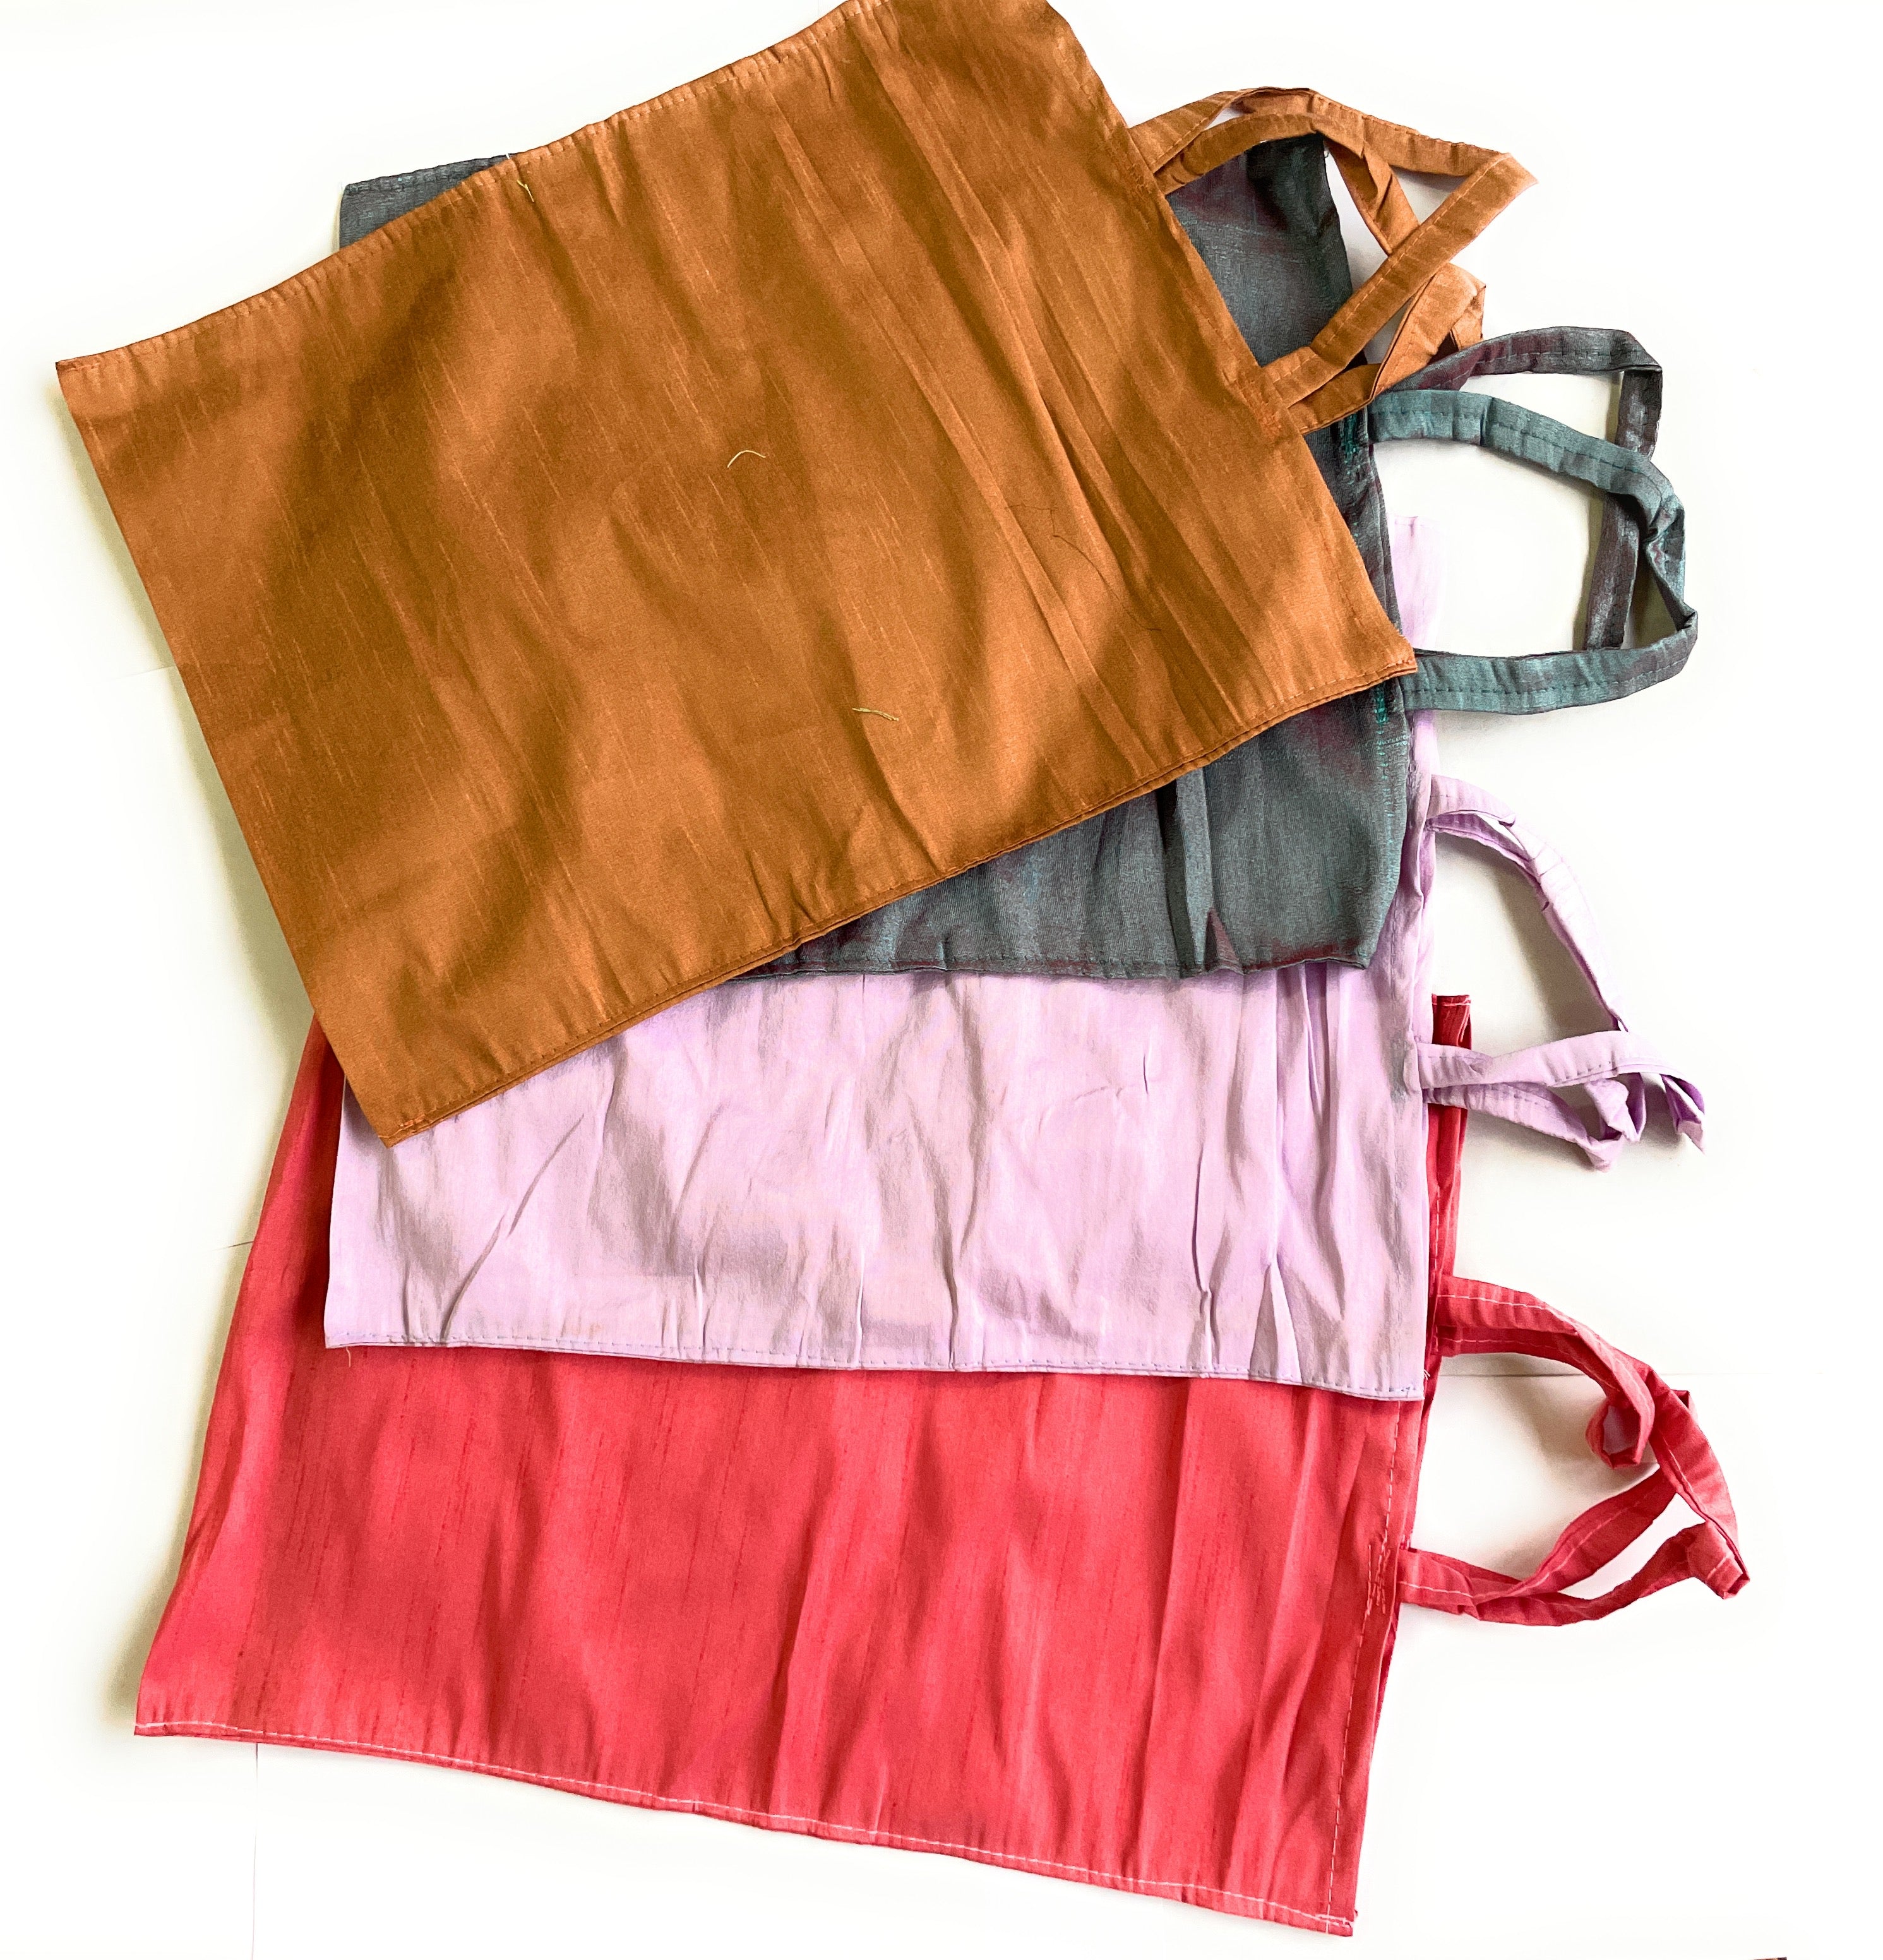 Macrame sling bag exporter from Uttarakhand, India.